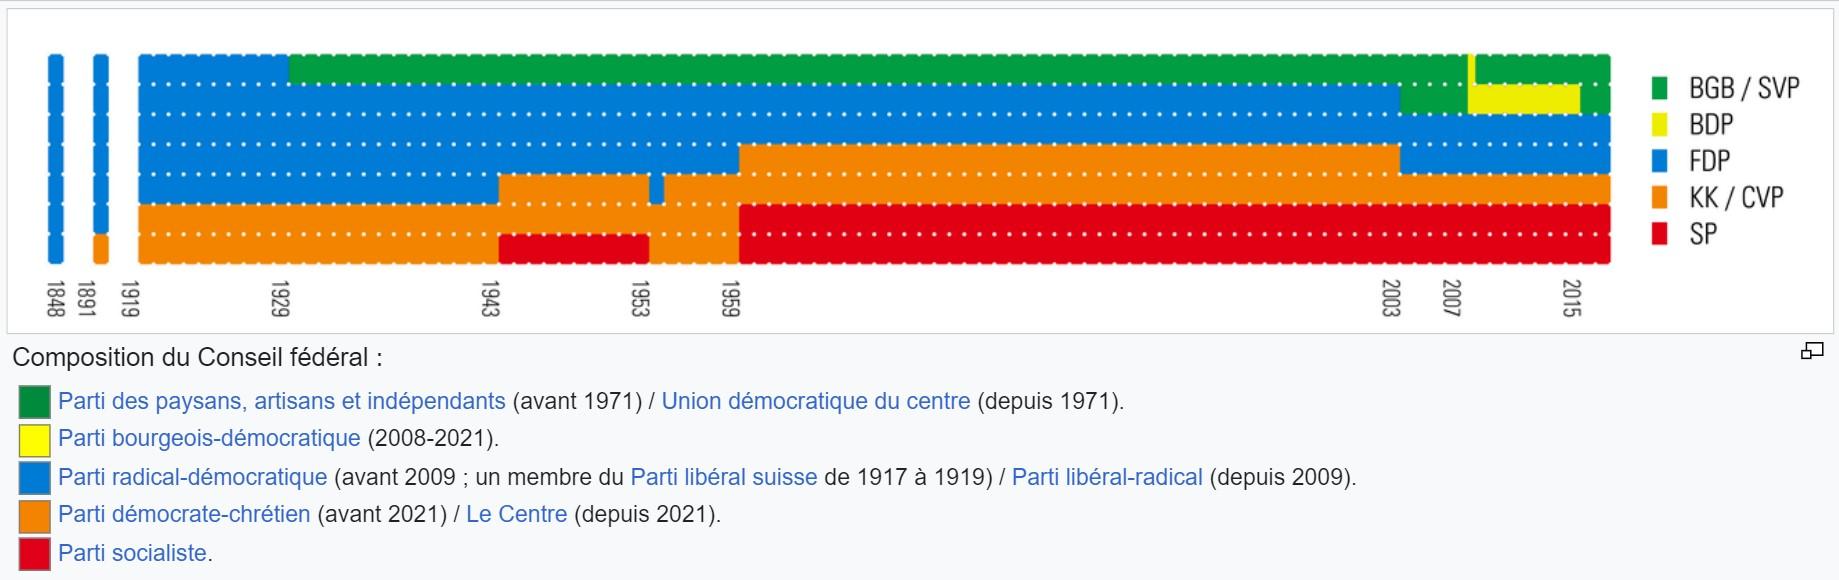 Composition du Conseil fédéral par parti politique depuis la création de l'Etat fédéral en 1848. [Wikipédia]